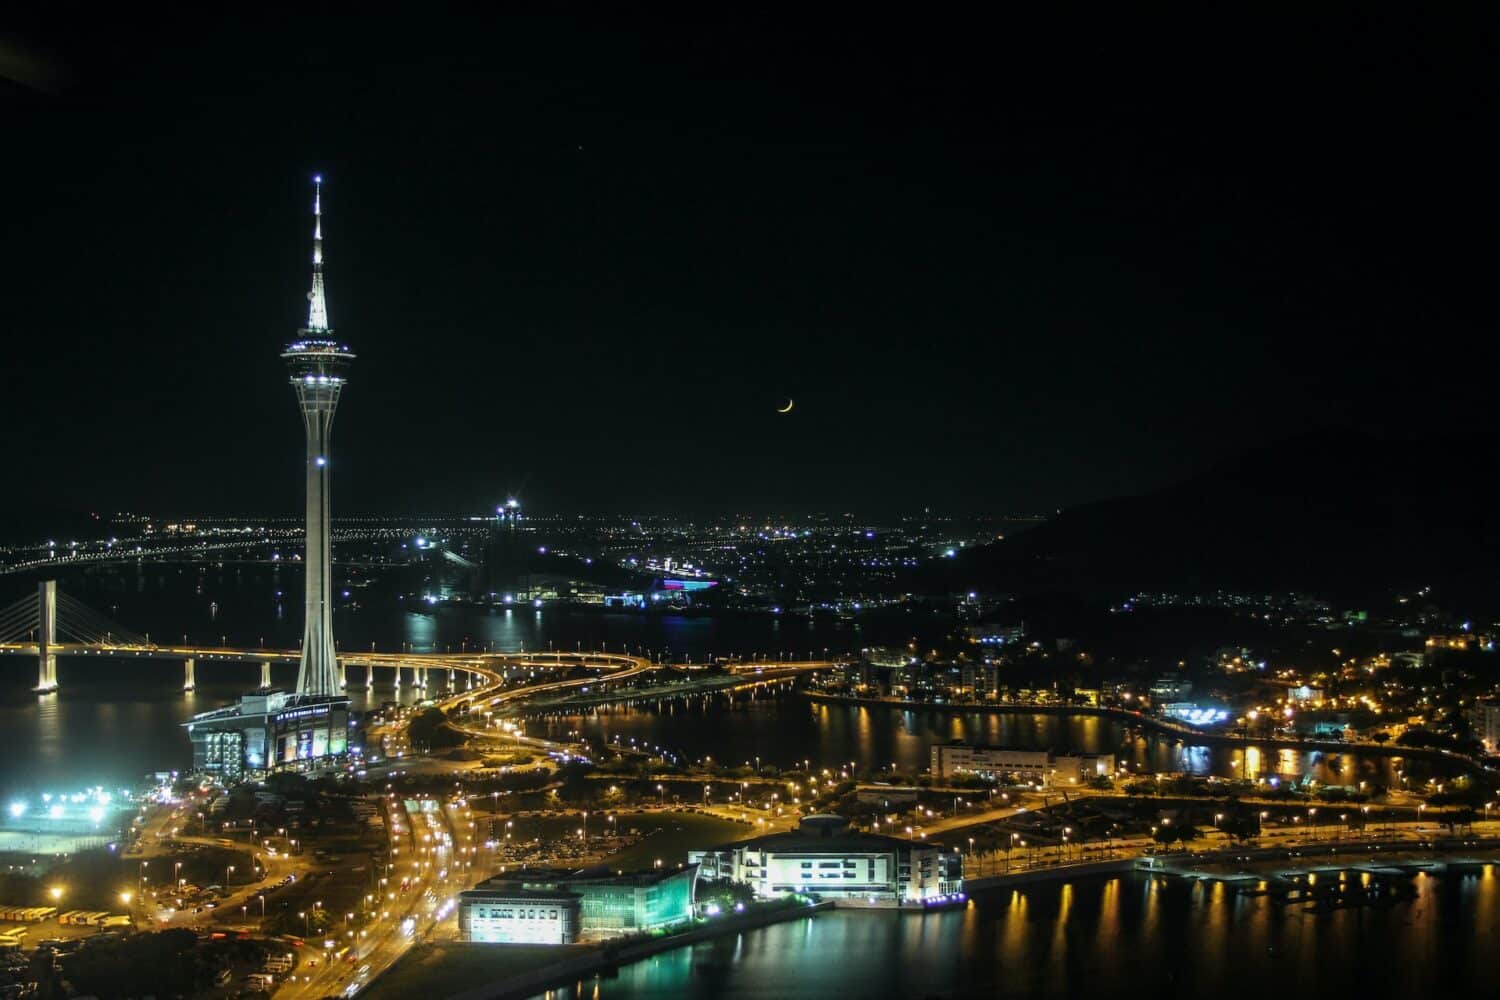 Visão panorâmica de Macau para ilustrar o post de seguro viagem Macau. Podemos ver um dos prédios mais altos do mundo, uma ponte e diversos edifícios. - Foto: Renato Marques via Unsplash